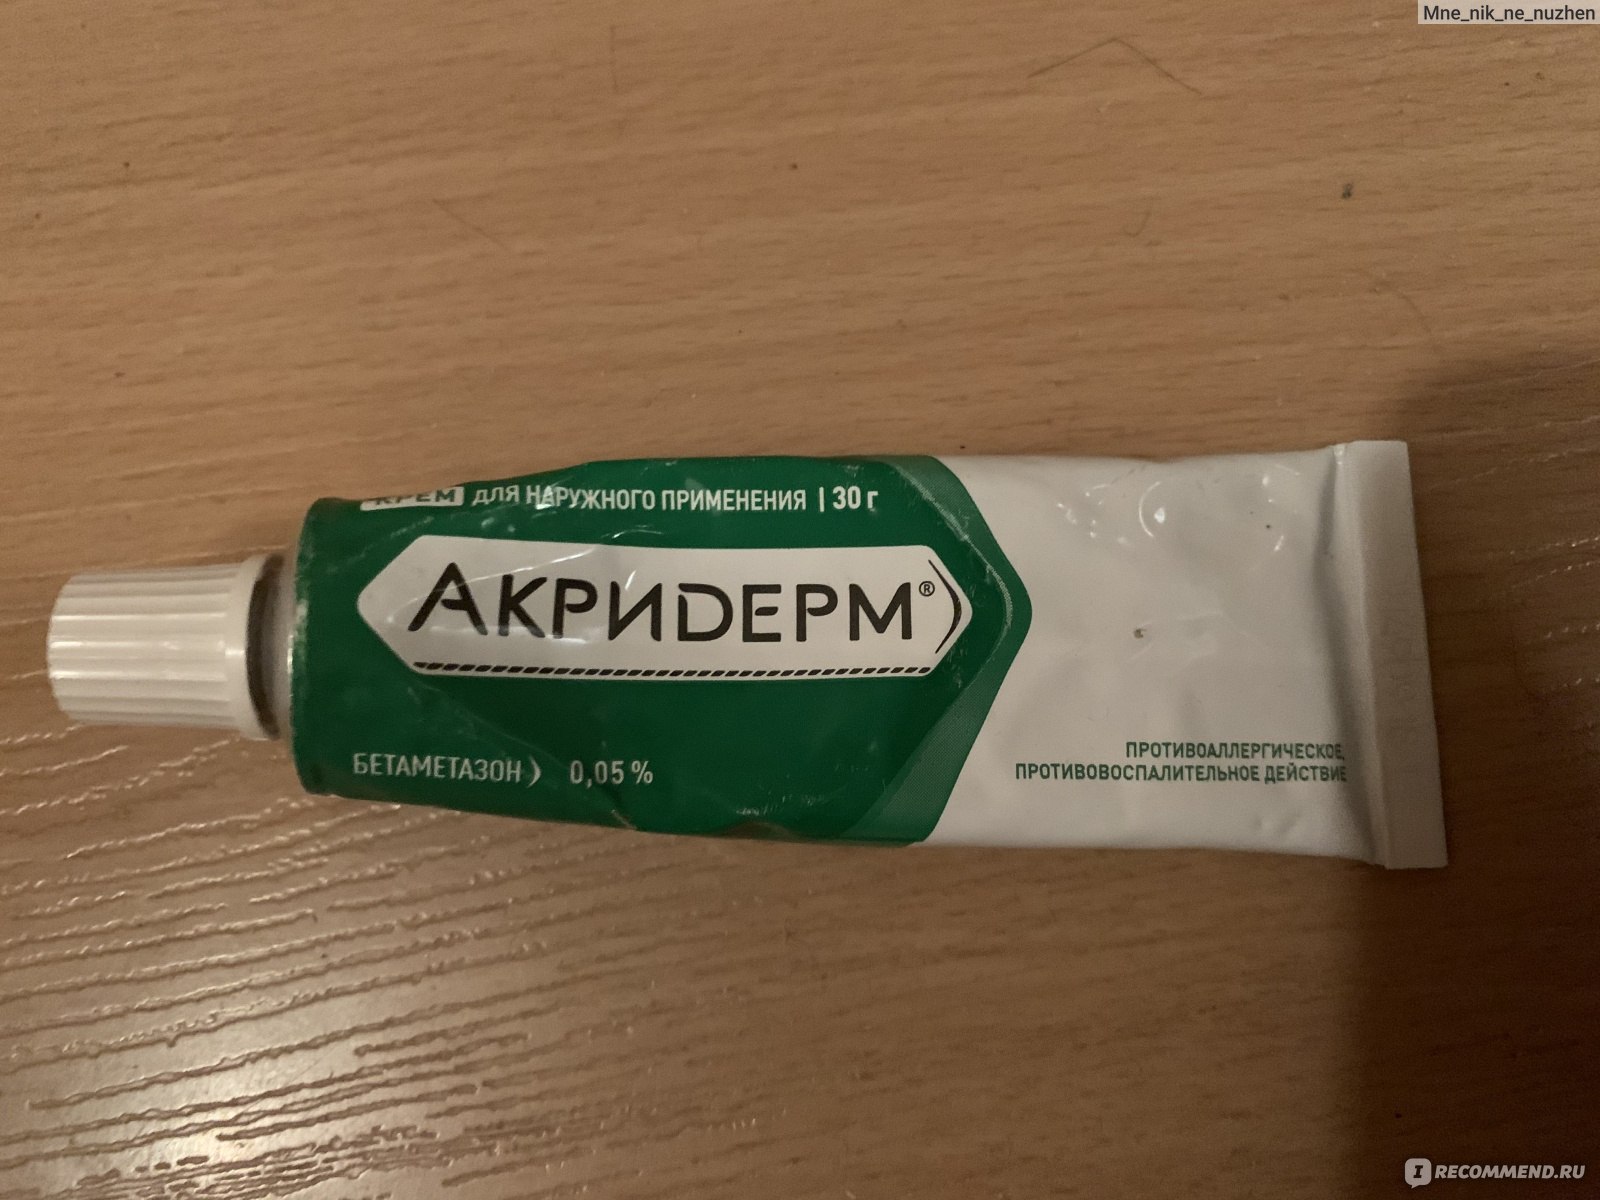 Гормональные препараты Акрихин Акридерм крем - «Расскажу опыт .